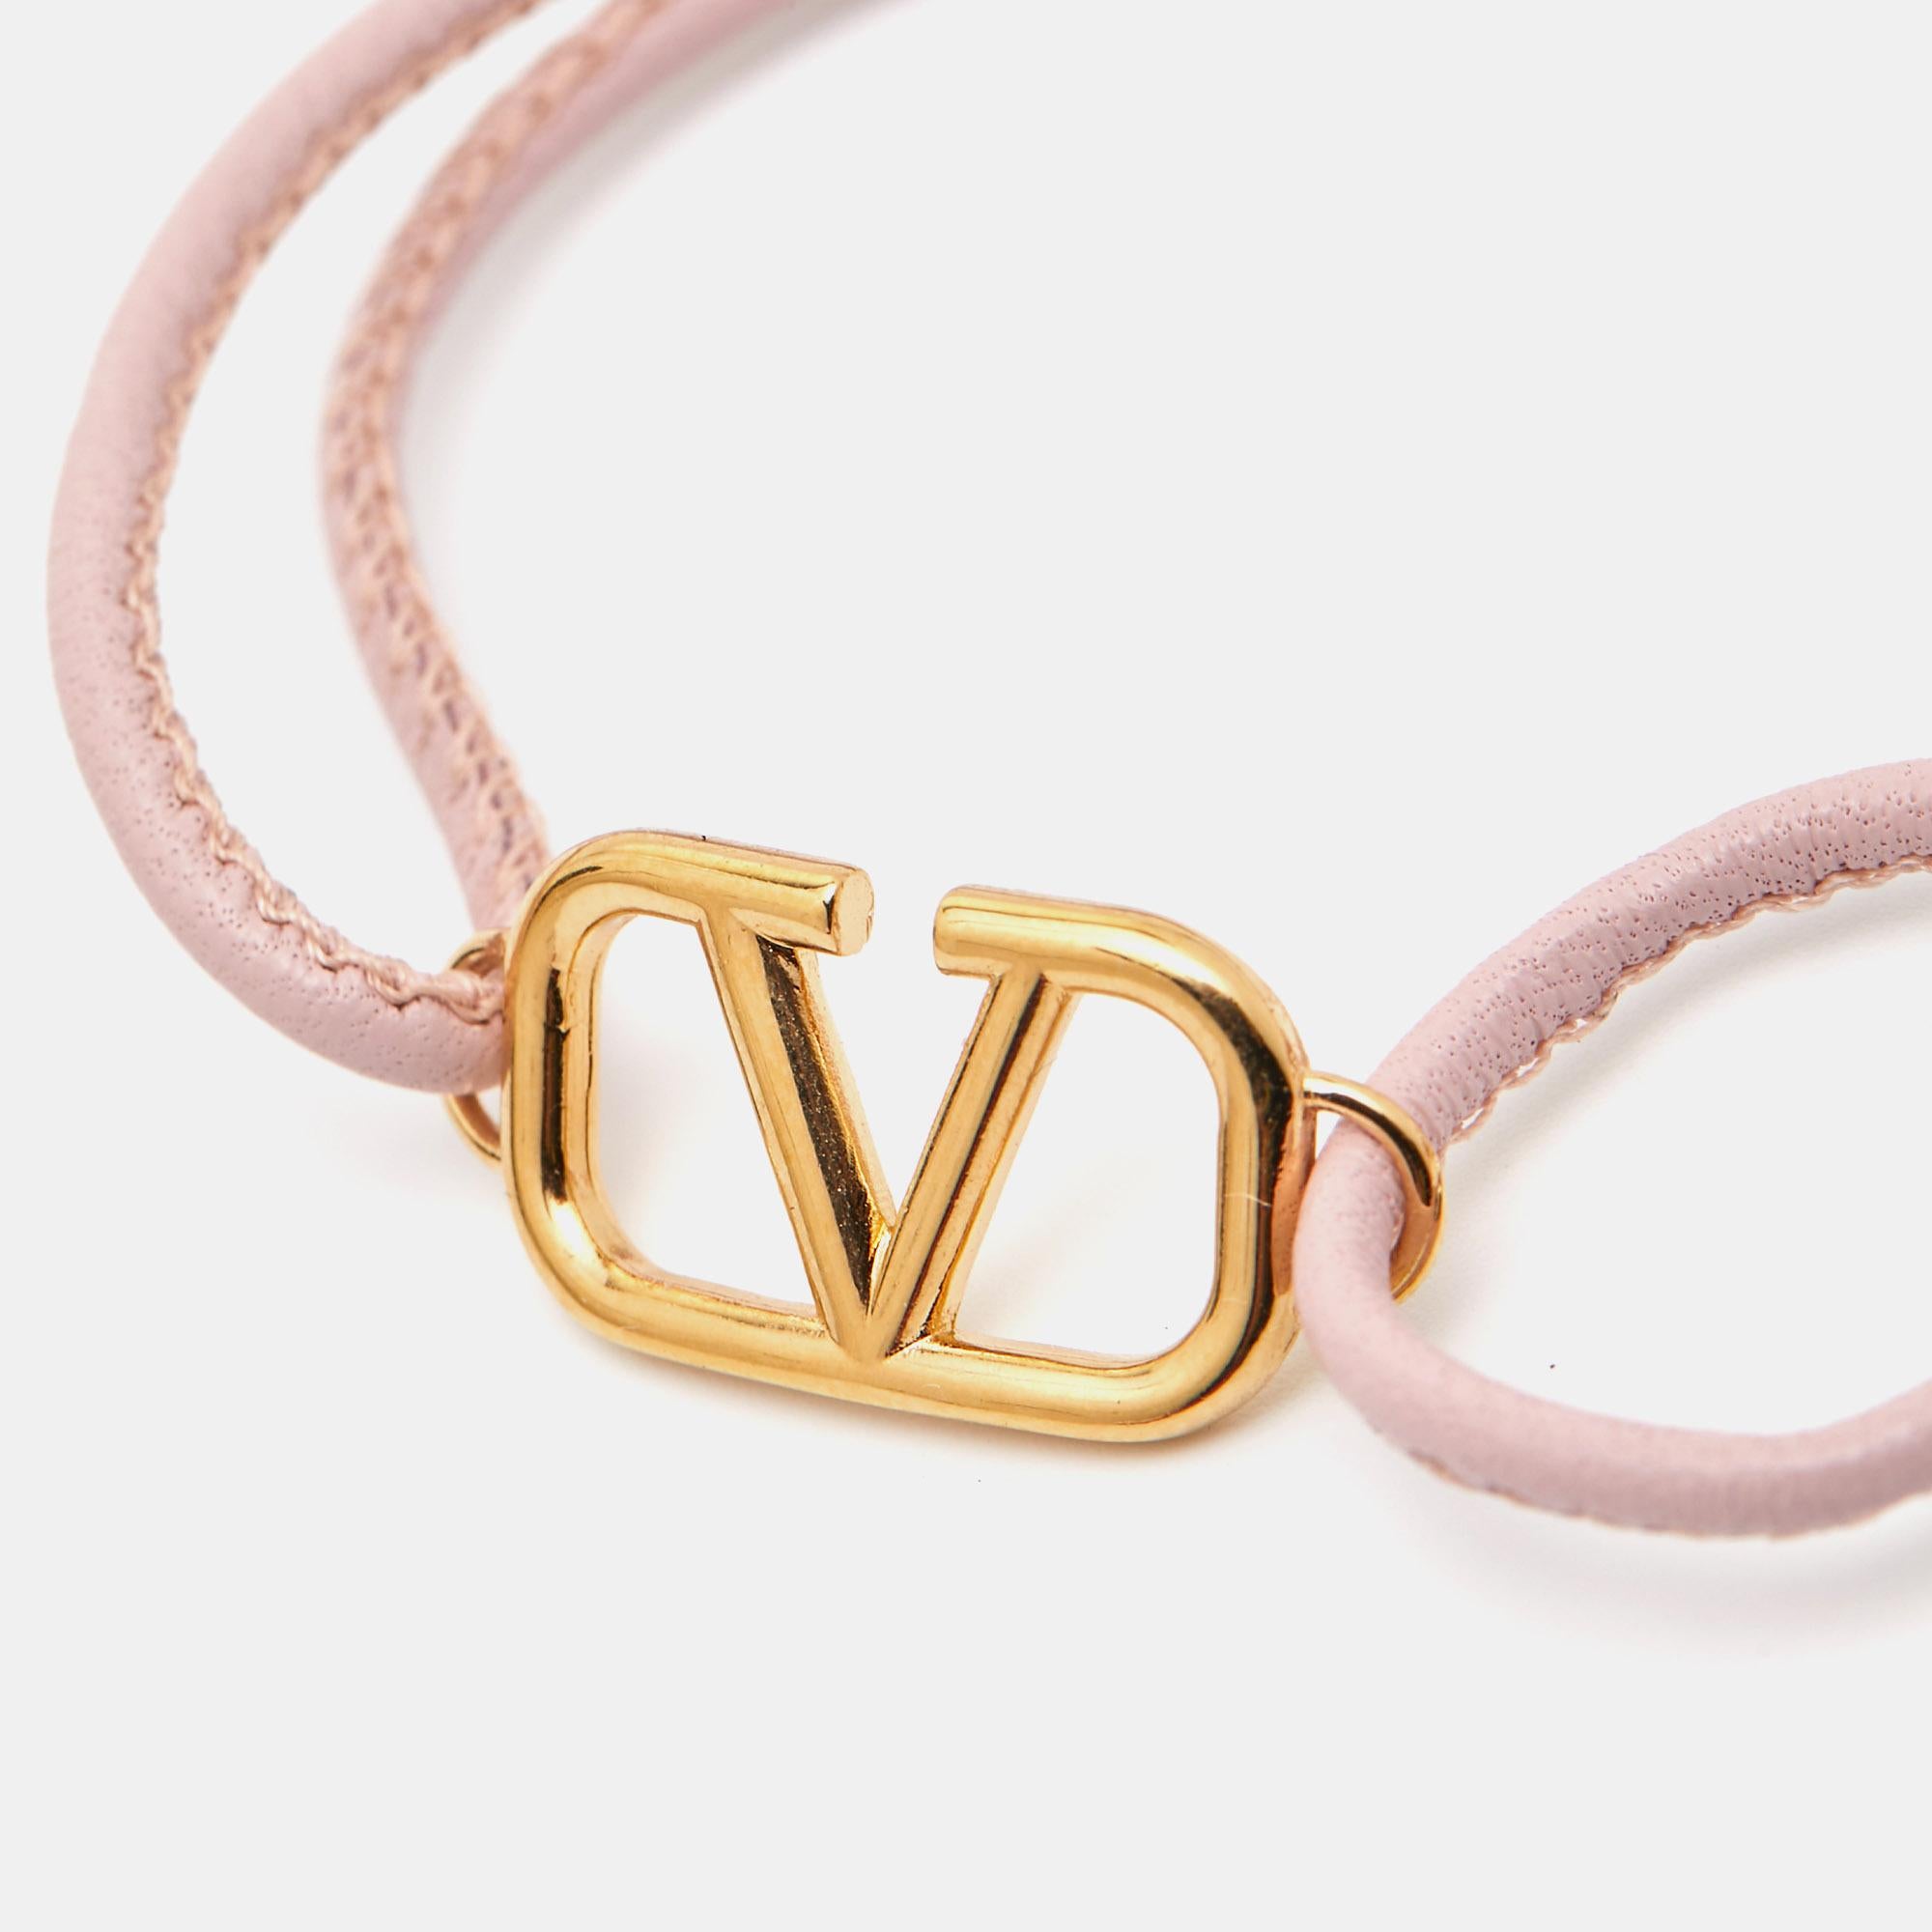 Valentino VLogo Leather Gold Tone Bracelet In New Condition For Sale In Dubai, Al Qouz 2